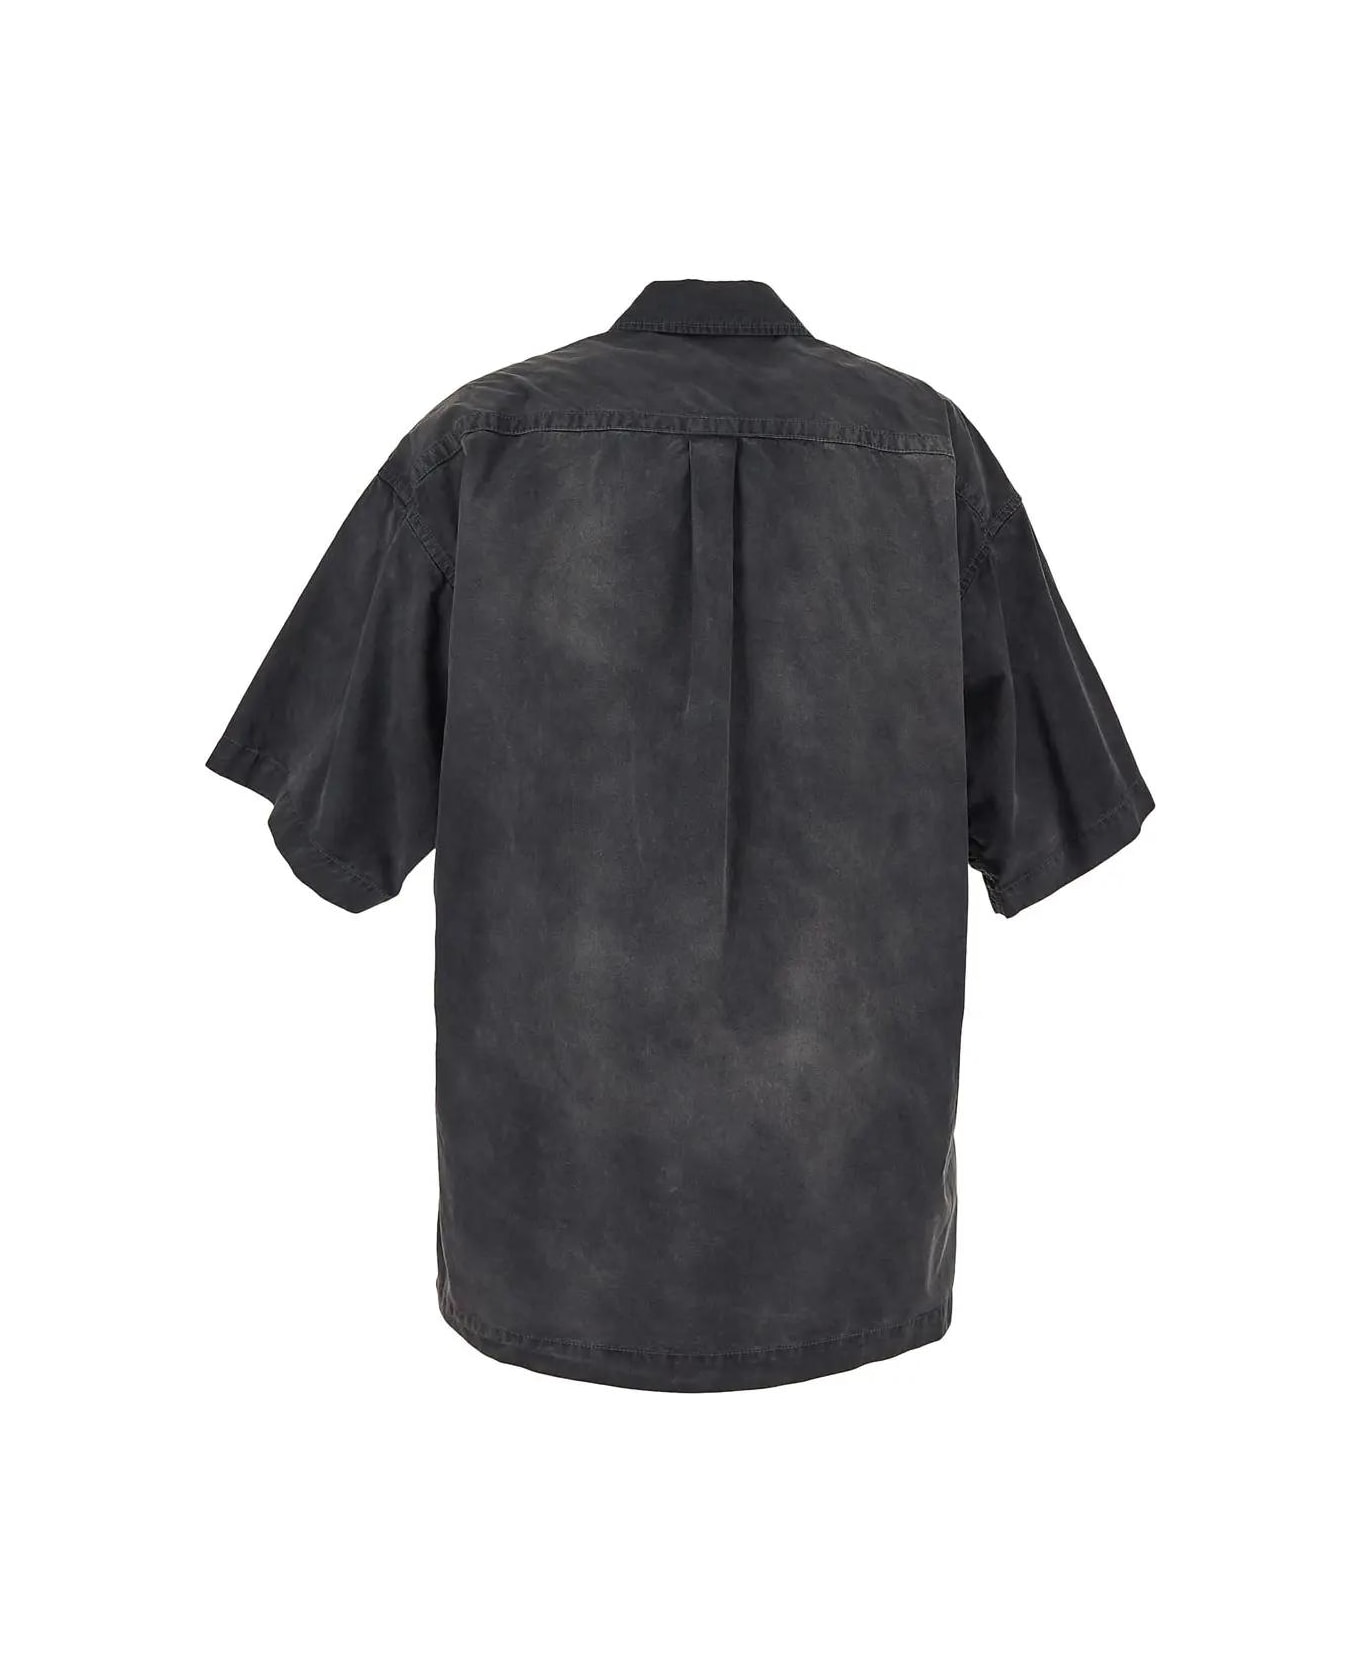 Alexander Wang Shirt Dress - A Washed Black Pearl